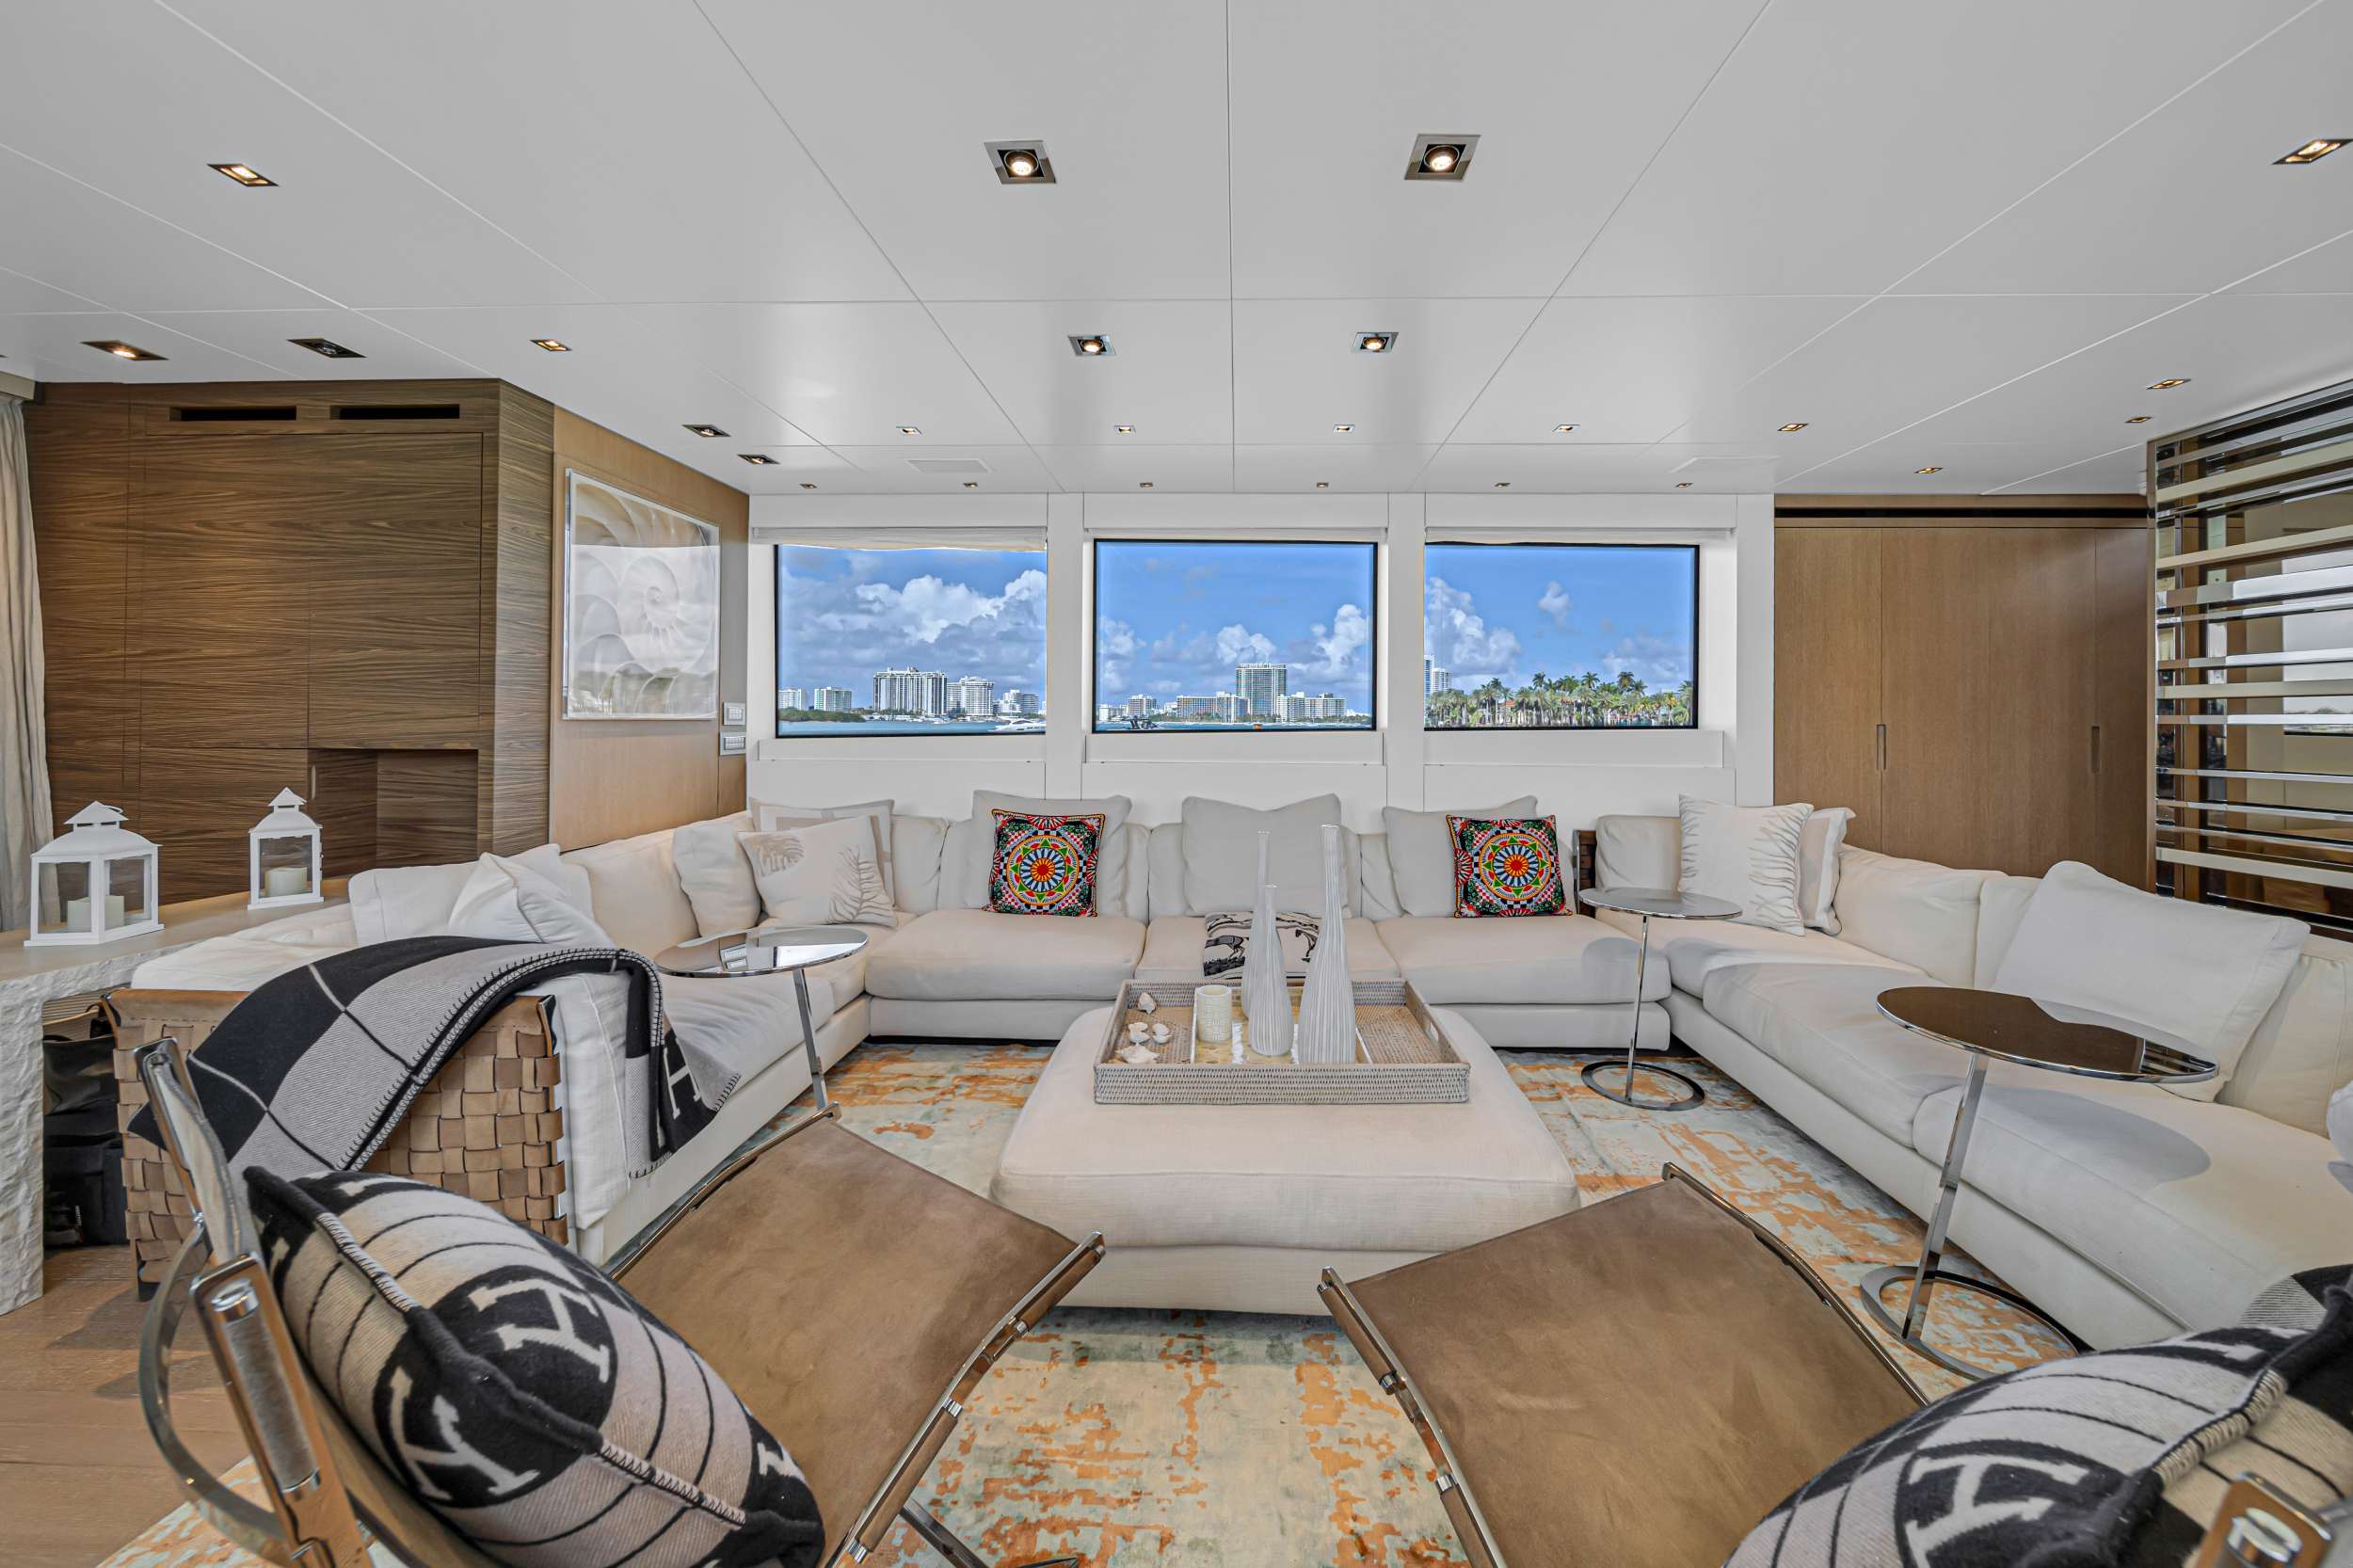 Astonish - Yacht Charter Bahamas & Boat hire in Florida & Bahamas 2